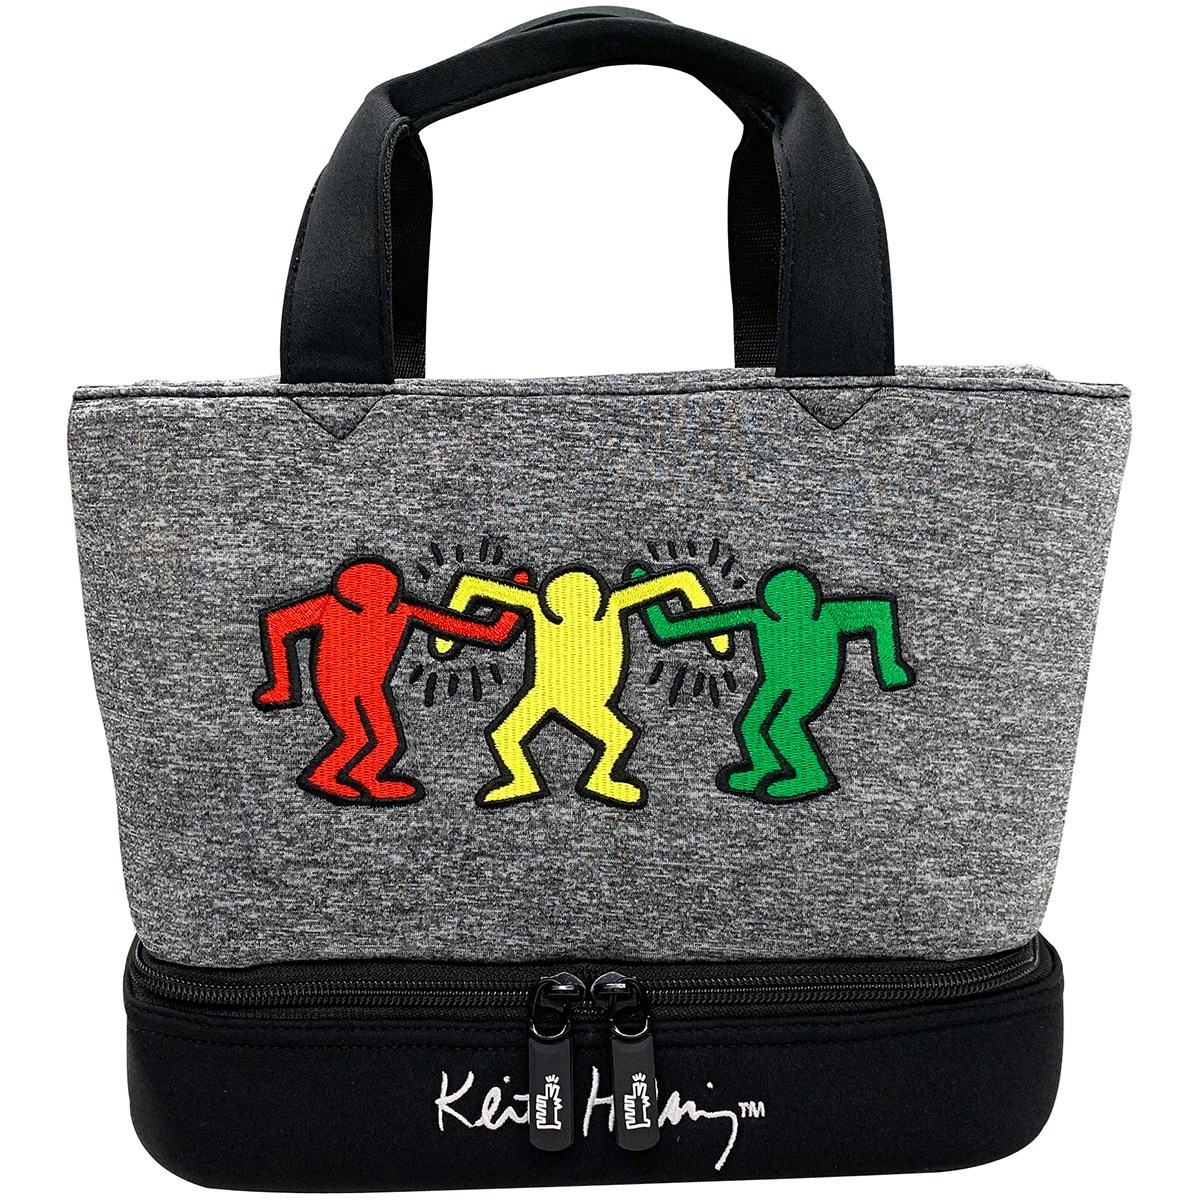 ラウンドバッグ キース ヘリング Keith Haring 通販 Gdoゴルフショップ